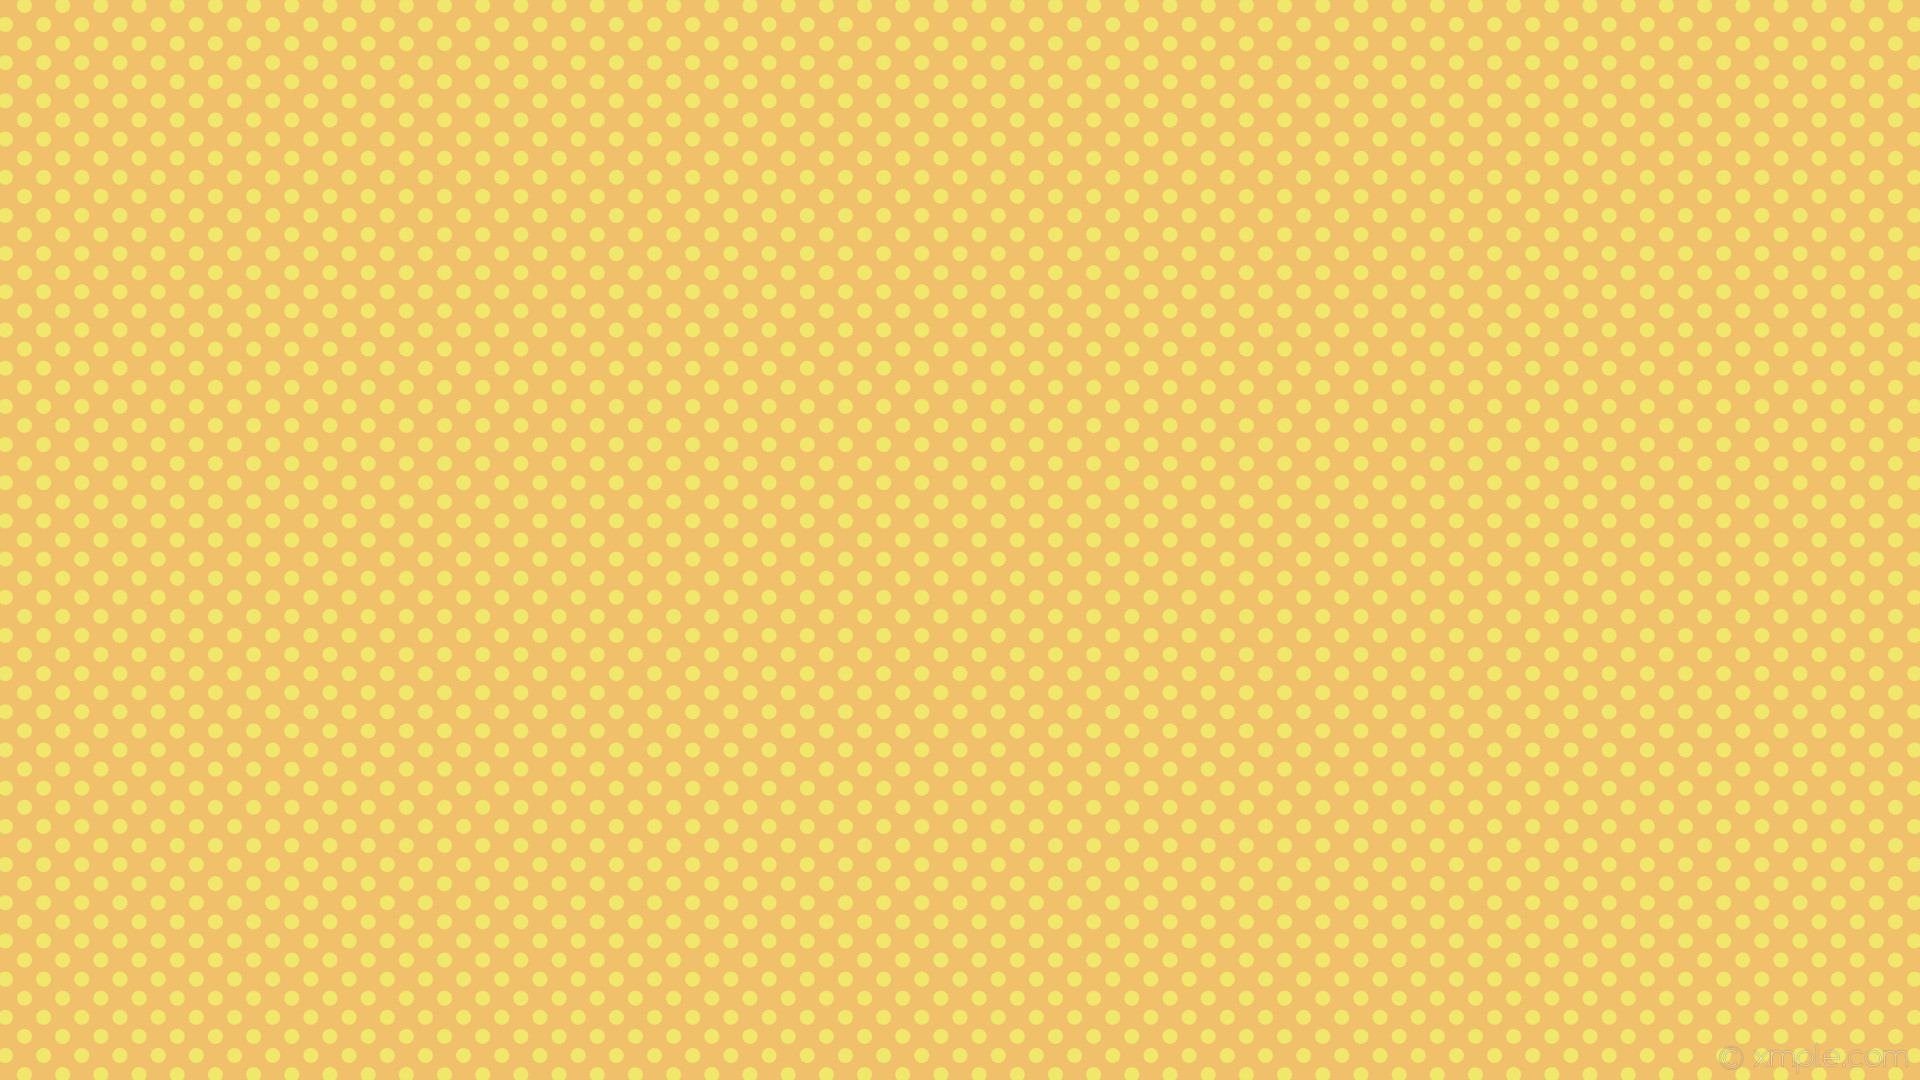 1920x1080 wallpaper yellow orange polka dots spots #f0c06b #f0e86b 315Â° 15px 27px